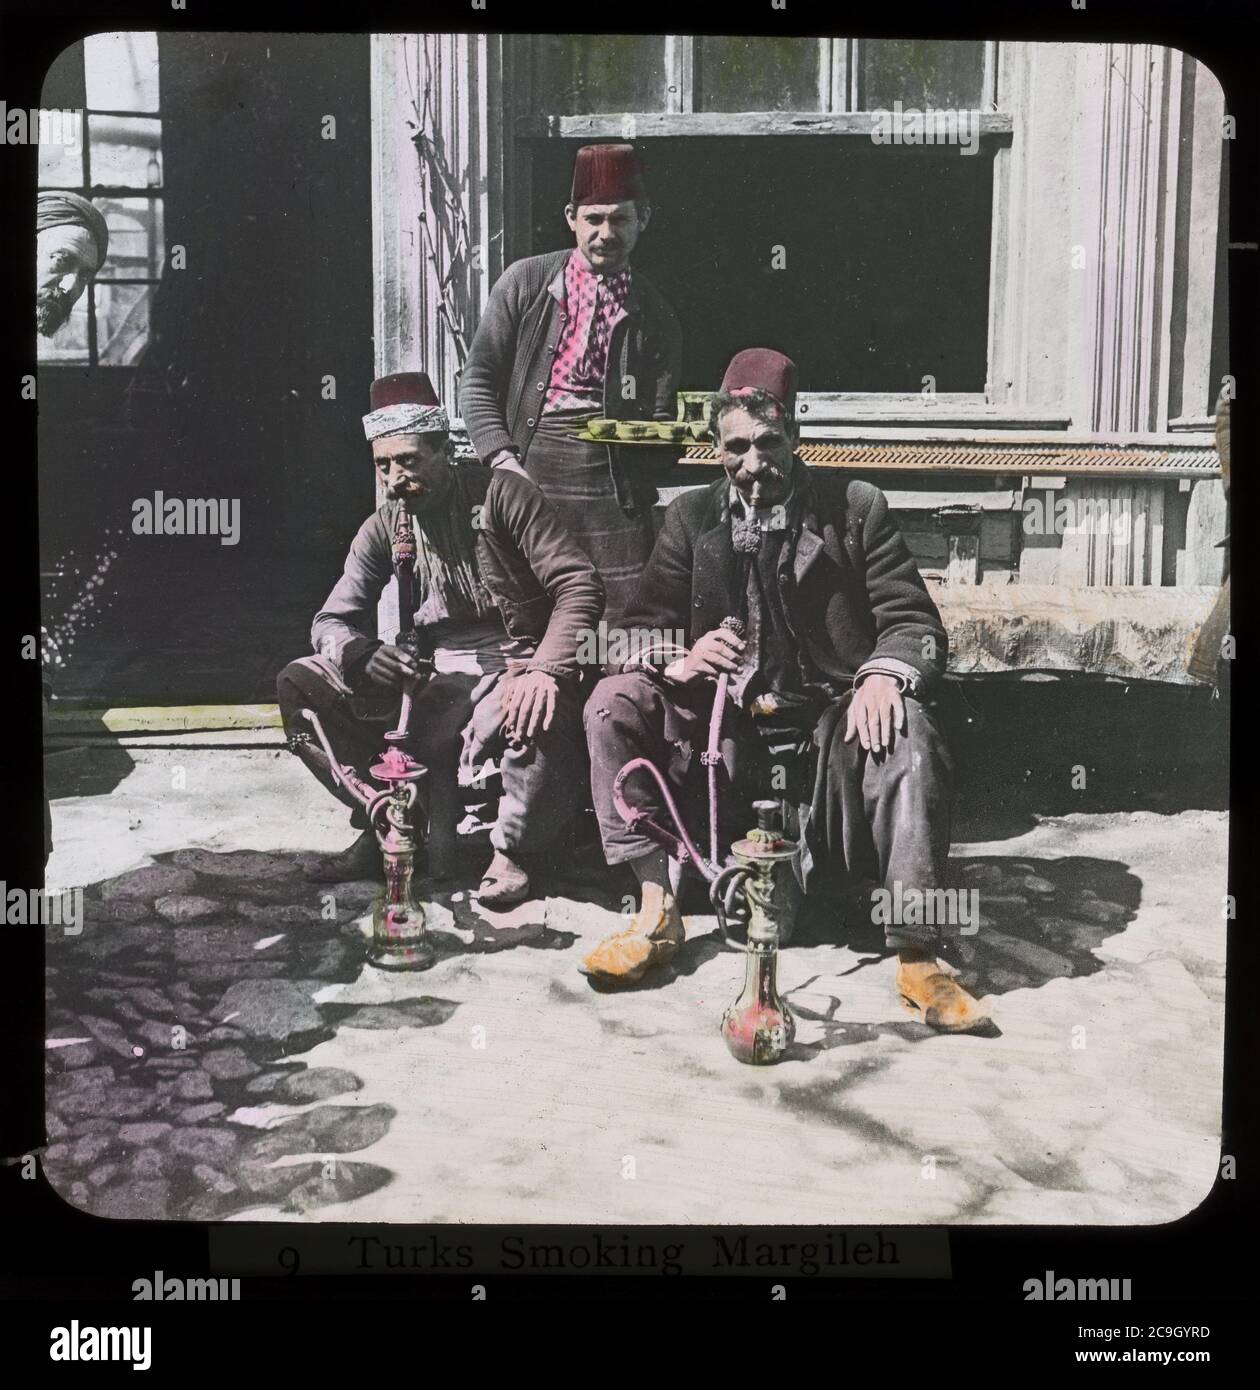 Fumeurs de nargua à Izmir / Smyrna, Turquie. Photographie de couleur main sur une plaque de verre sèche de la collection Herry W. Schaefer, vers 1910. Banque D'Images